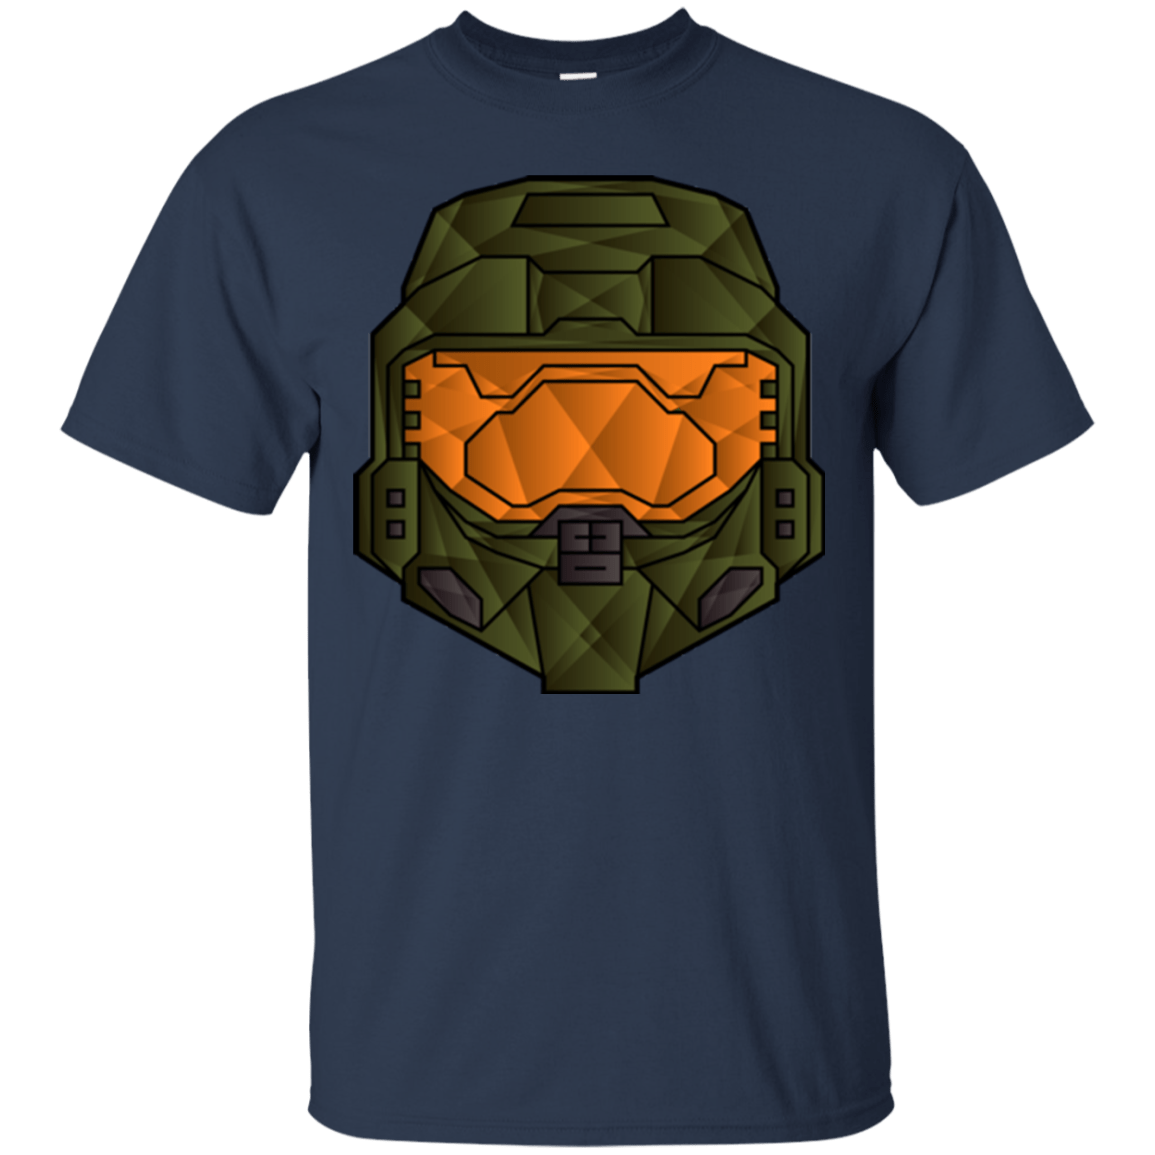 T-Shirts Navy / Small Master Chief T-Shirt